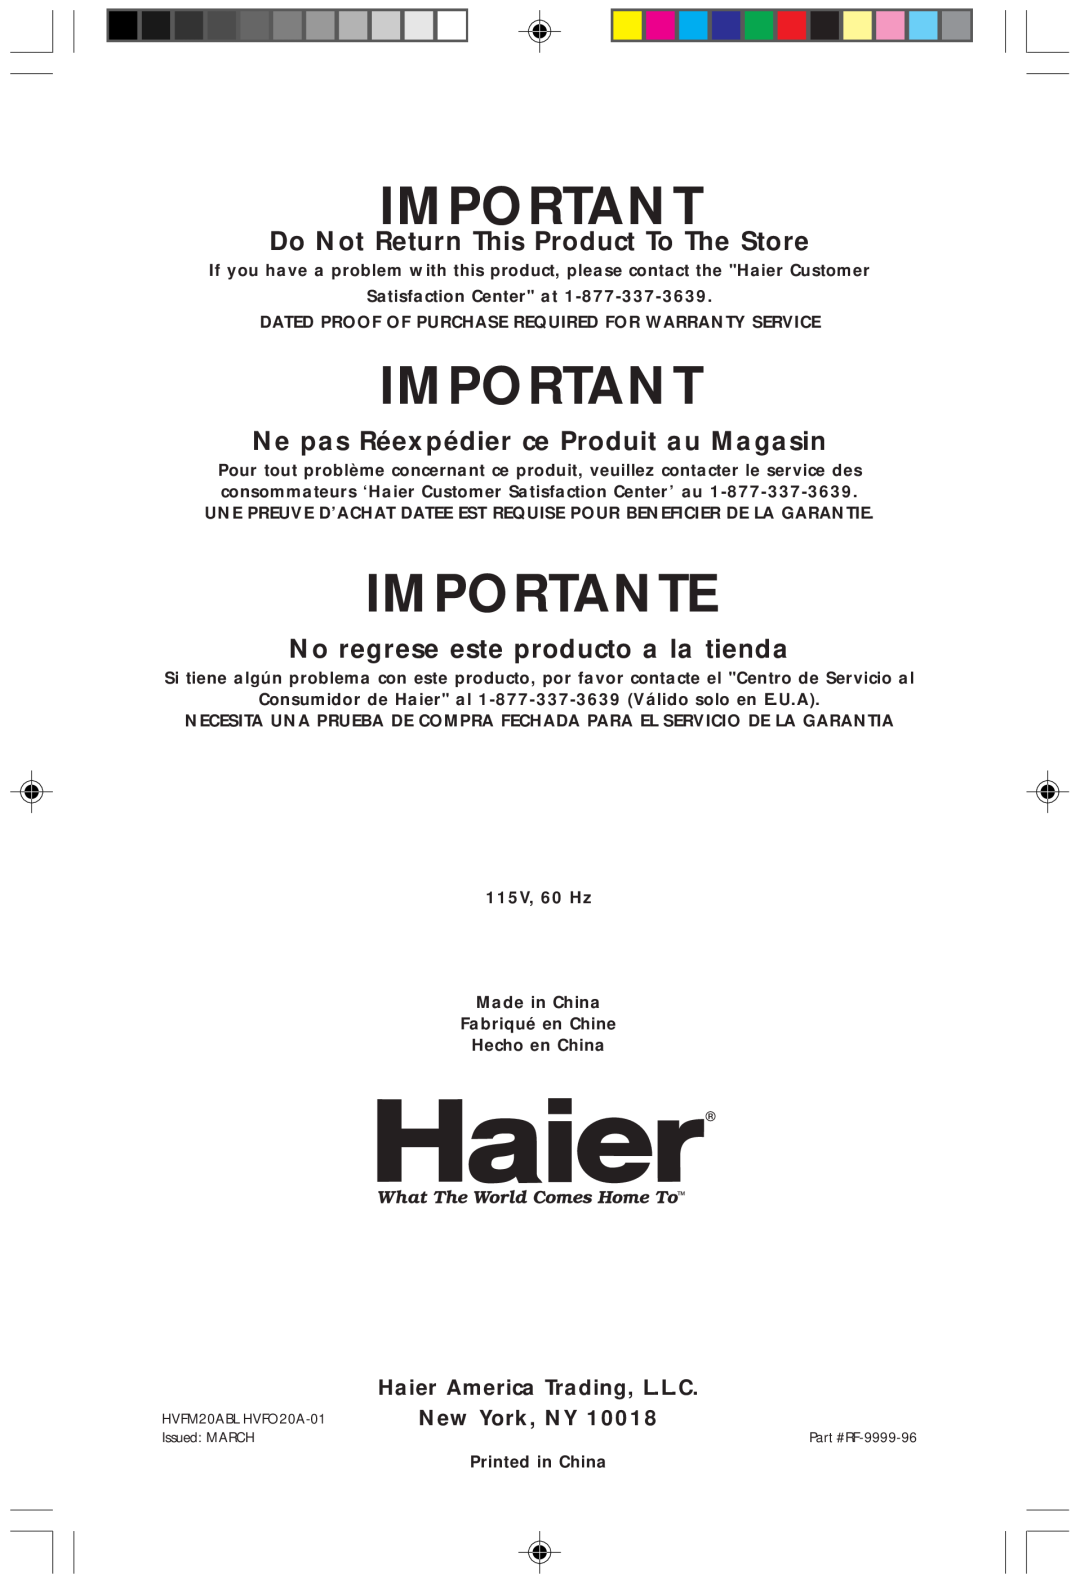 Haier HVFM20A, HVF020A Importante, Do Not Return This Product To The Store, Ne pas Réexpédier ce Produit au Magasin 